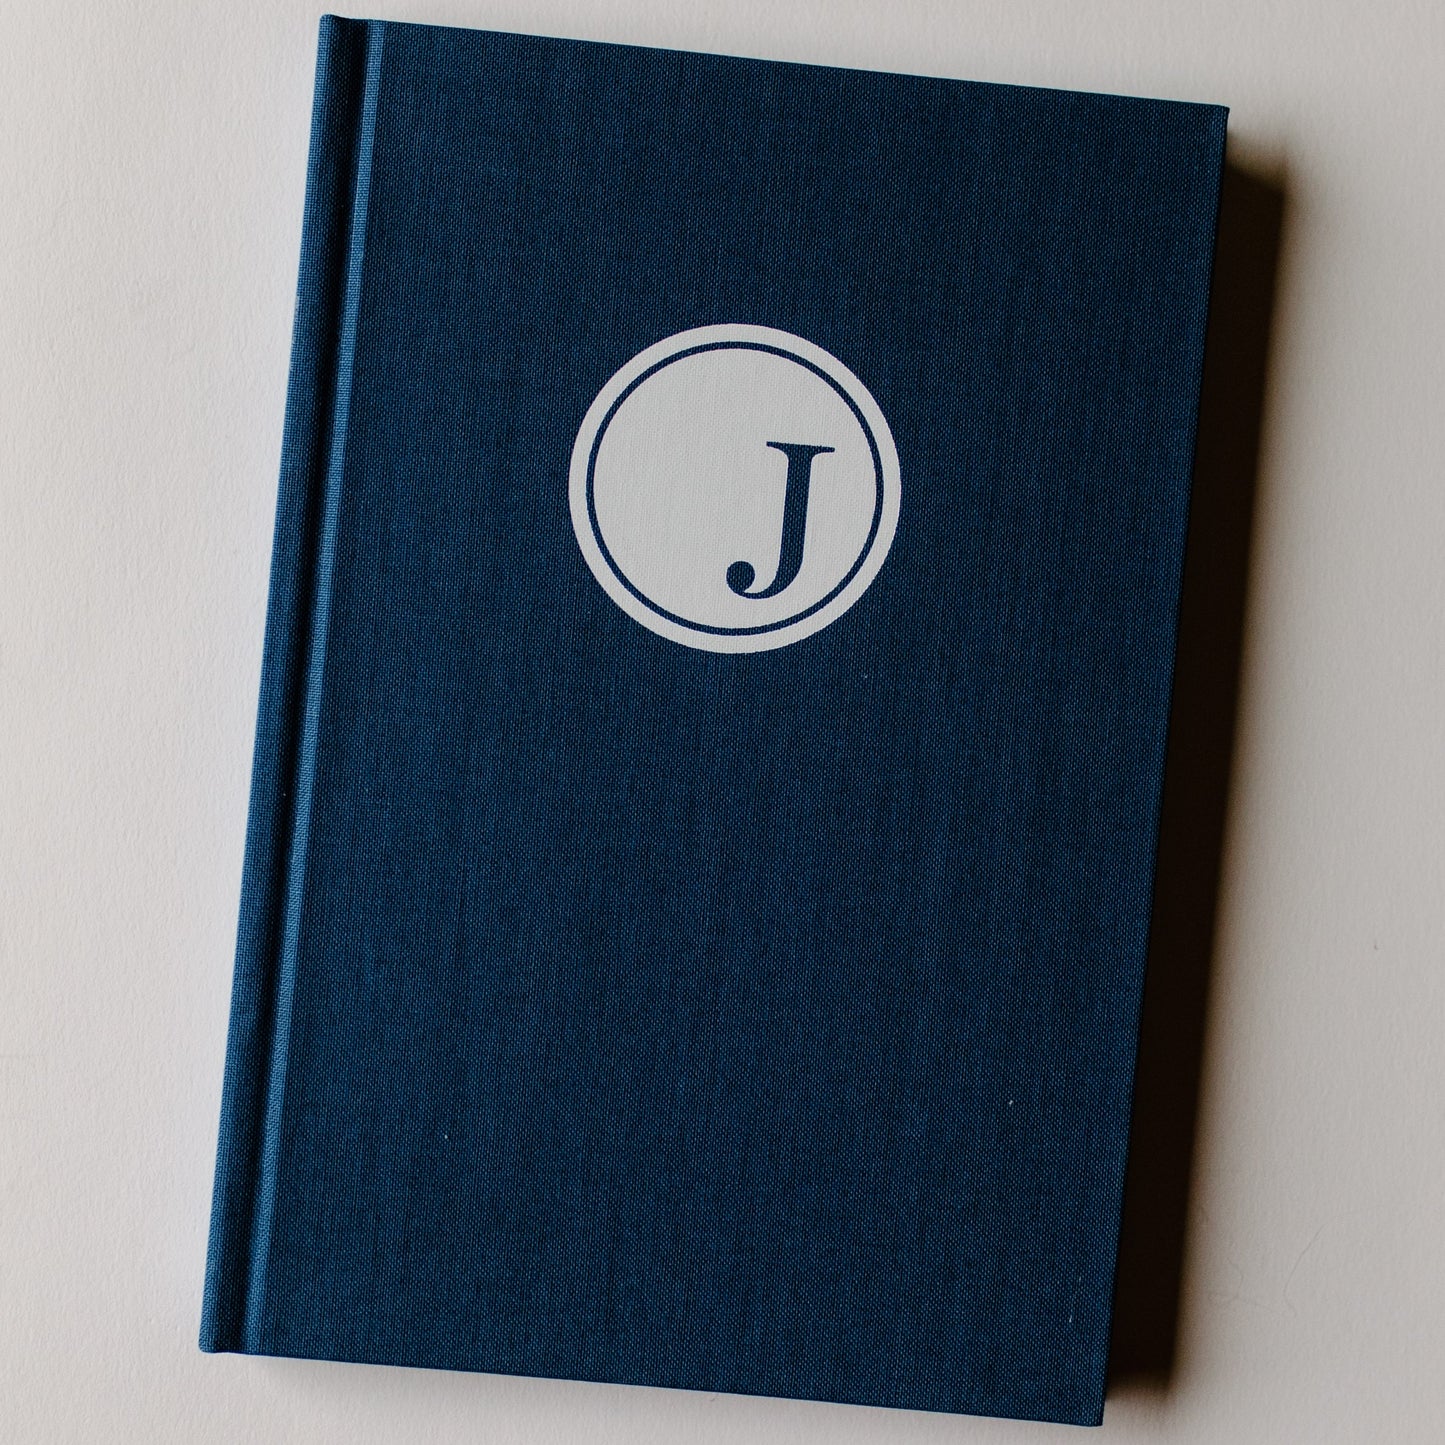 JODY GRATITUDE JOURNAL 3.0! (Blue Cover)